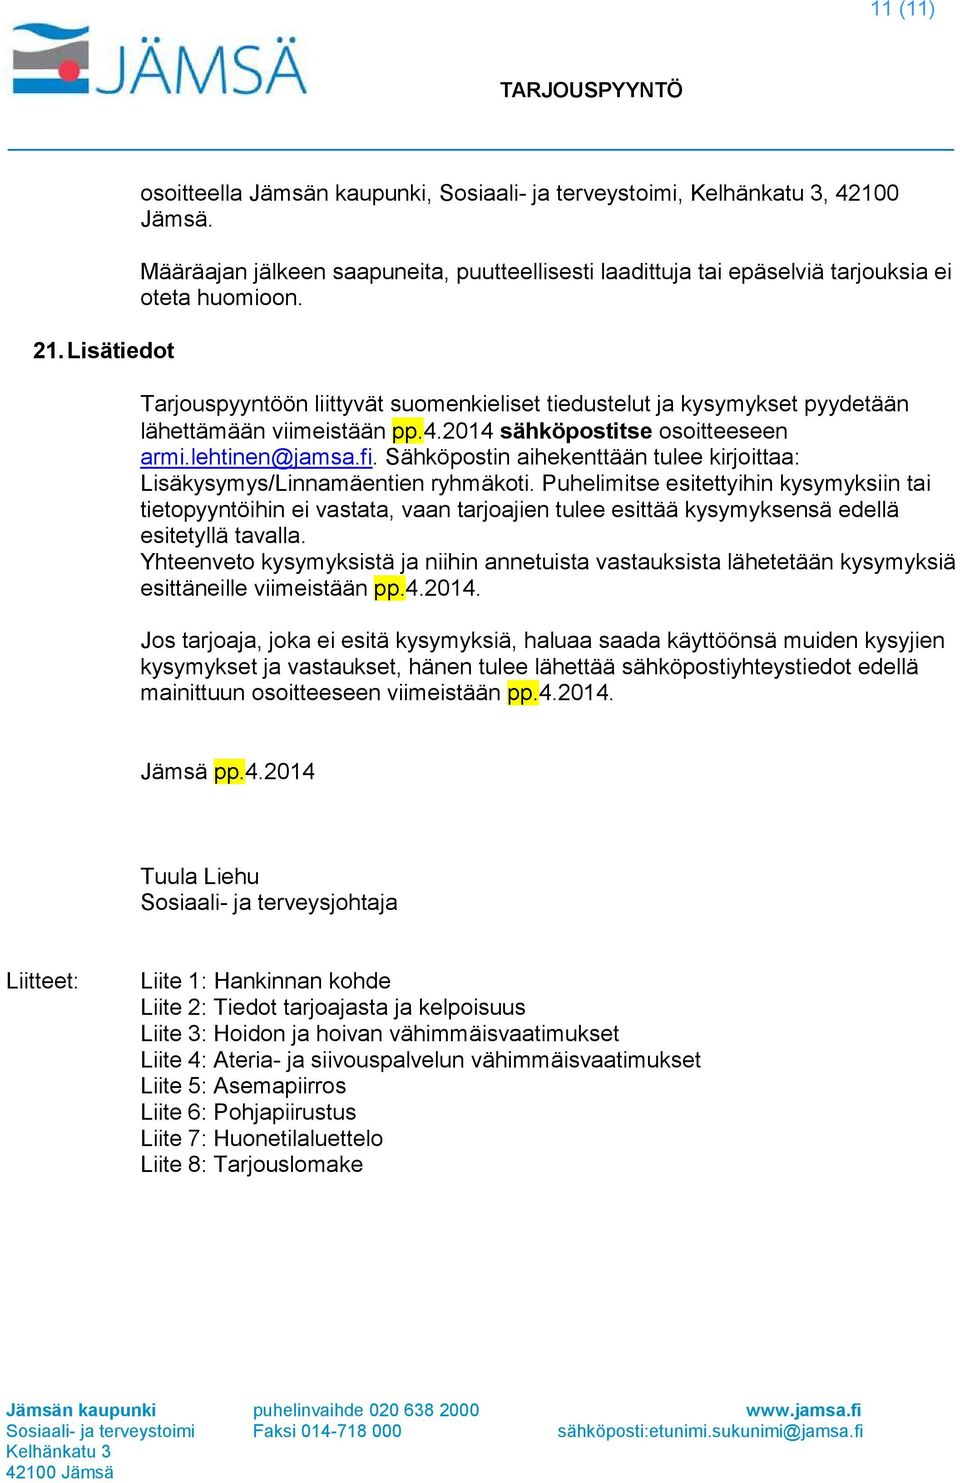 Sähköpostin aihekenttään tulee kirjoittaa: Lisäkysymys/Linnamäentien ryhmäkoti.